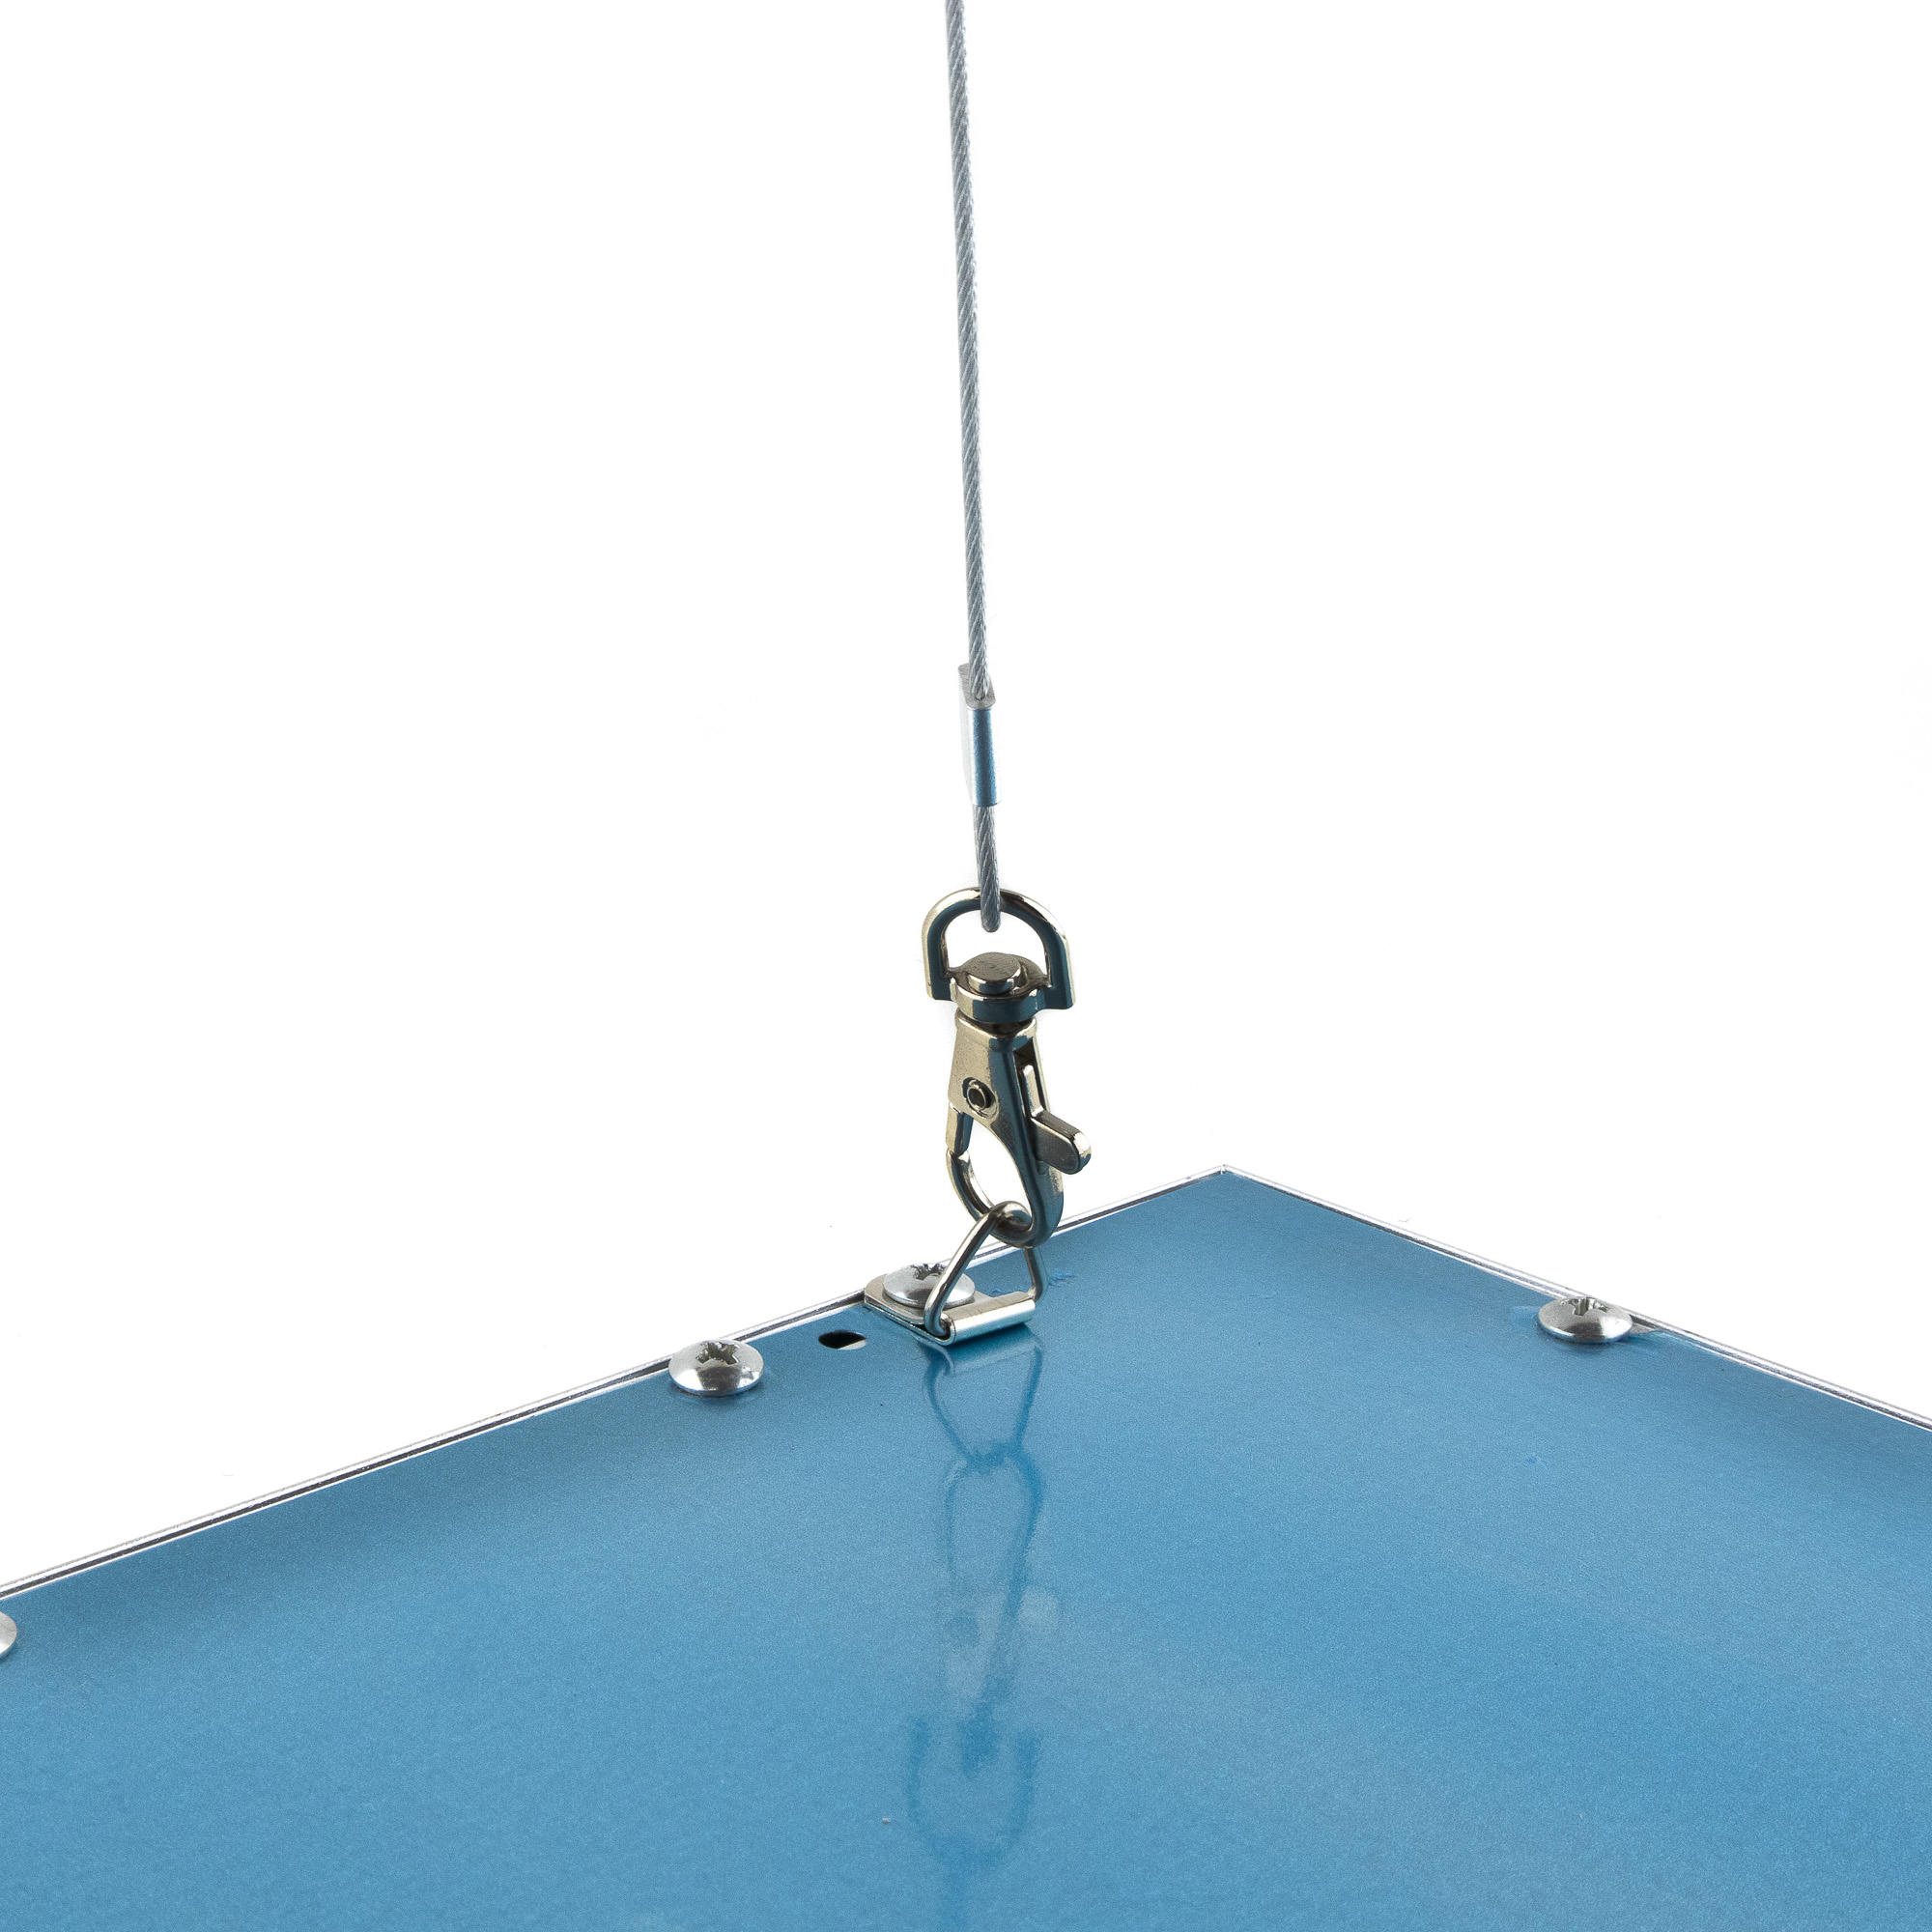 Ceiling suspension set for led panels